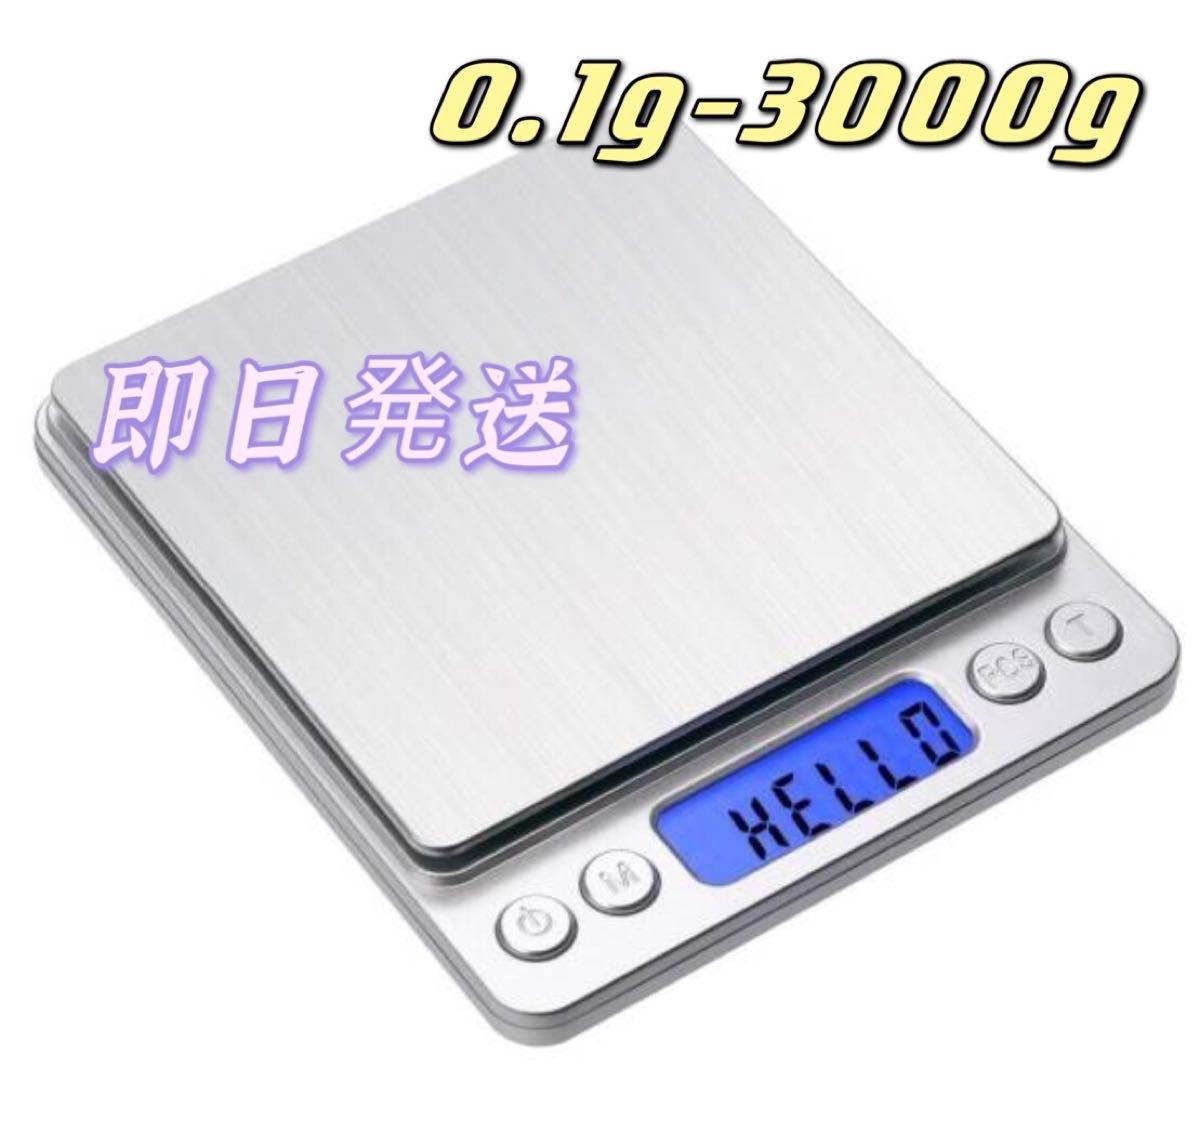 日本語取説0.1g〜3000g デジタルキッチンスケール 電子はかり 電池付き